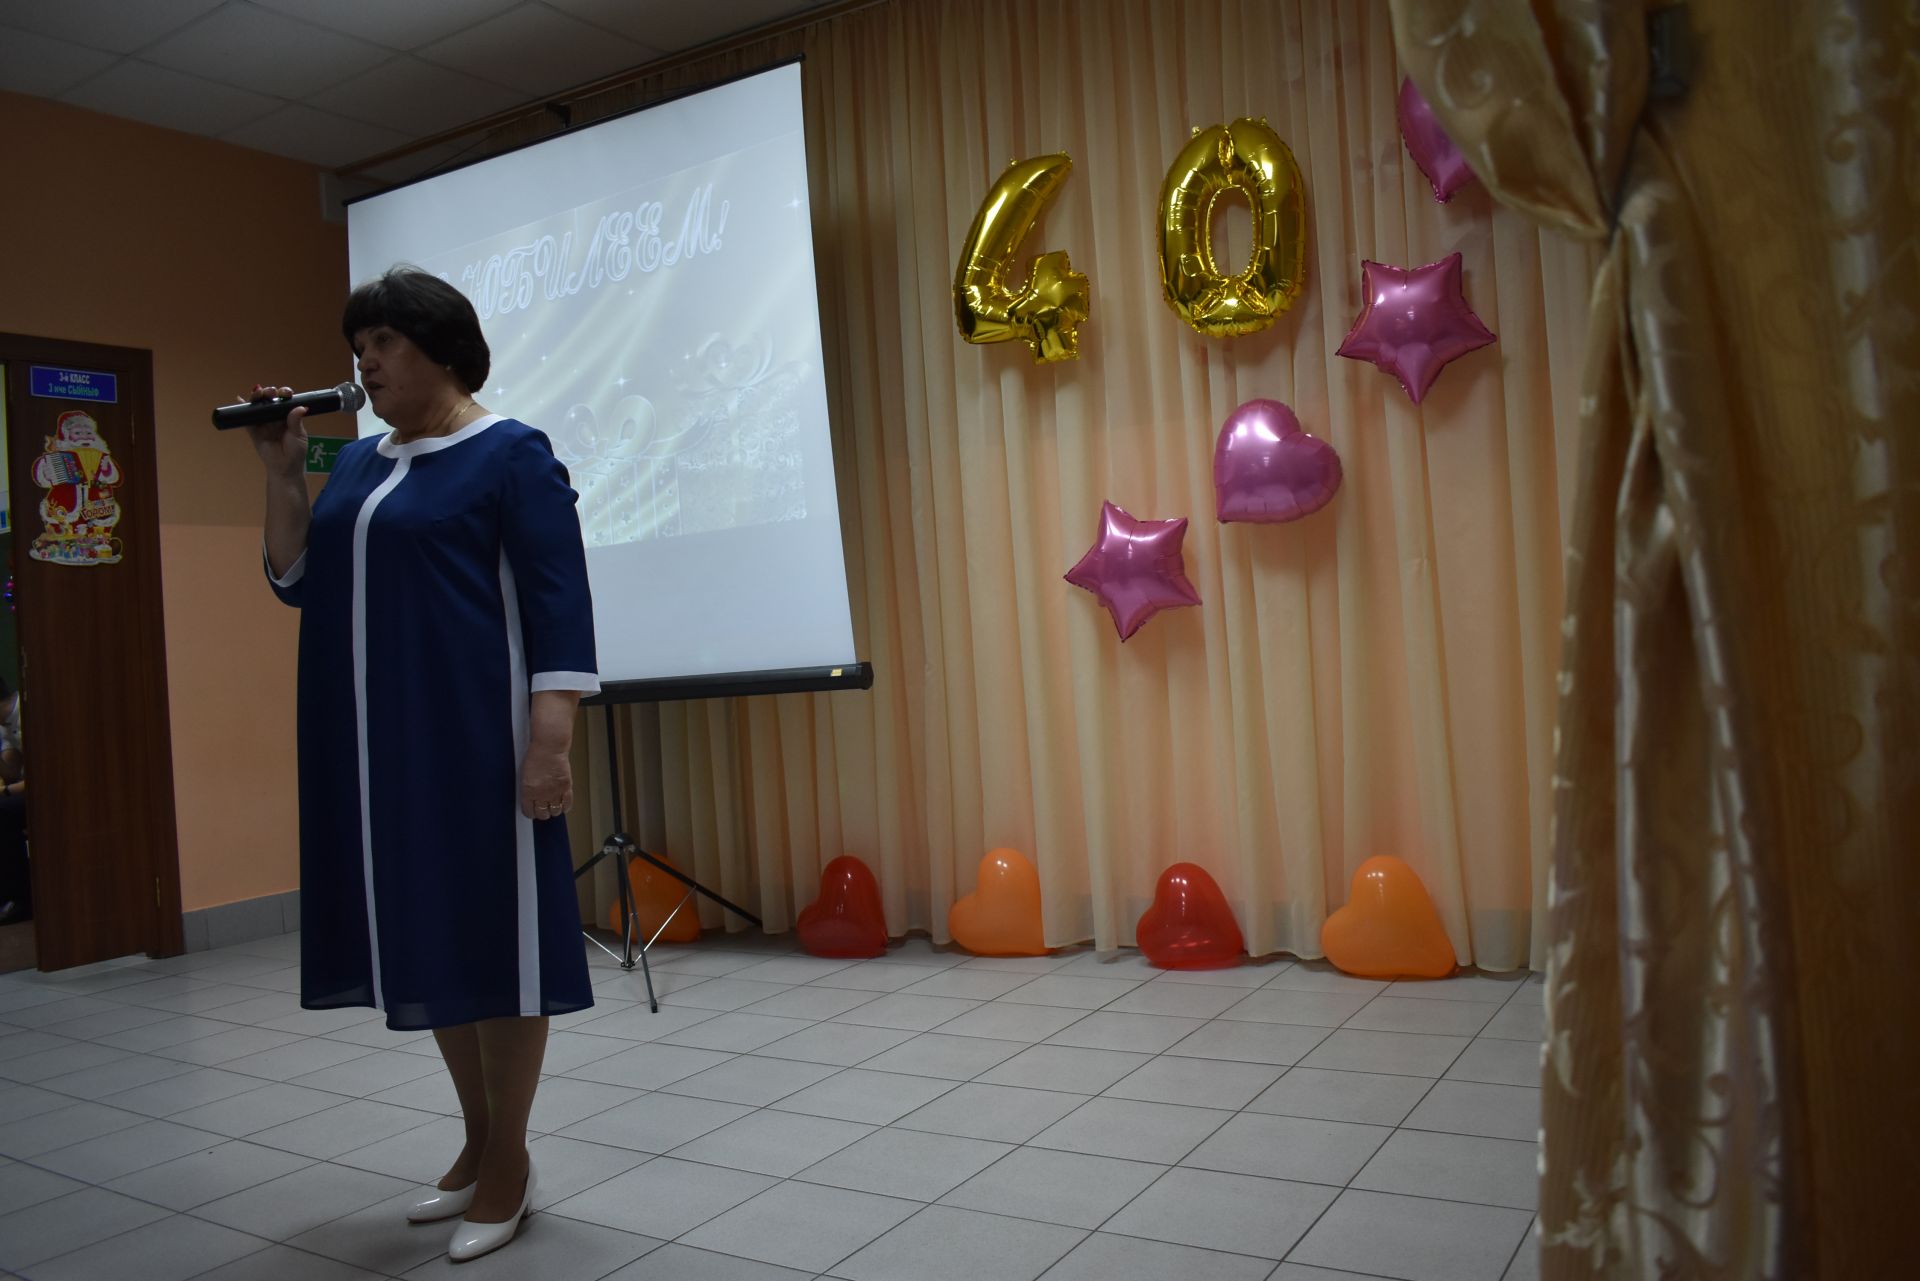 Макуловская школа отметила  40-лет со дня открытия   (фоторепортаж с торжества)